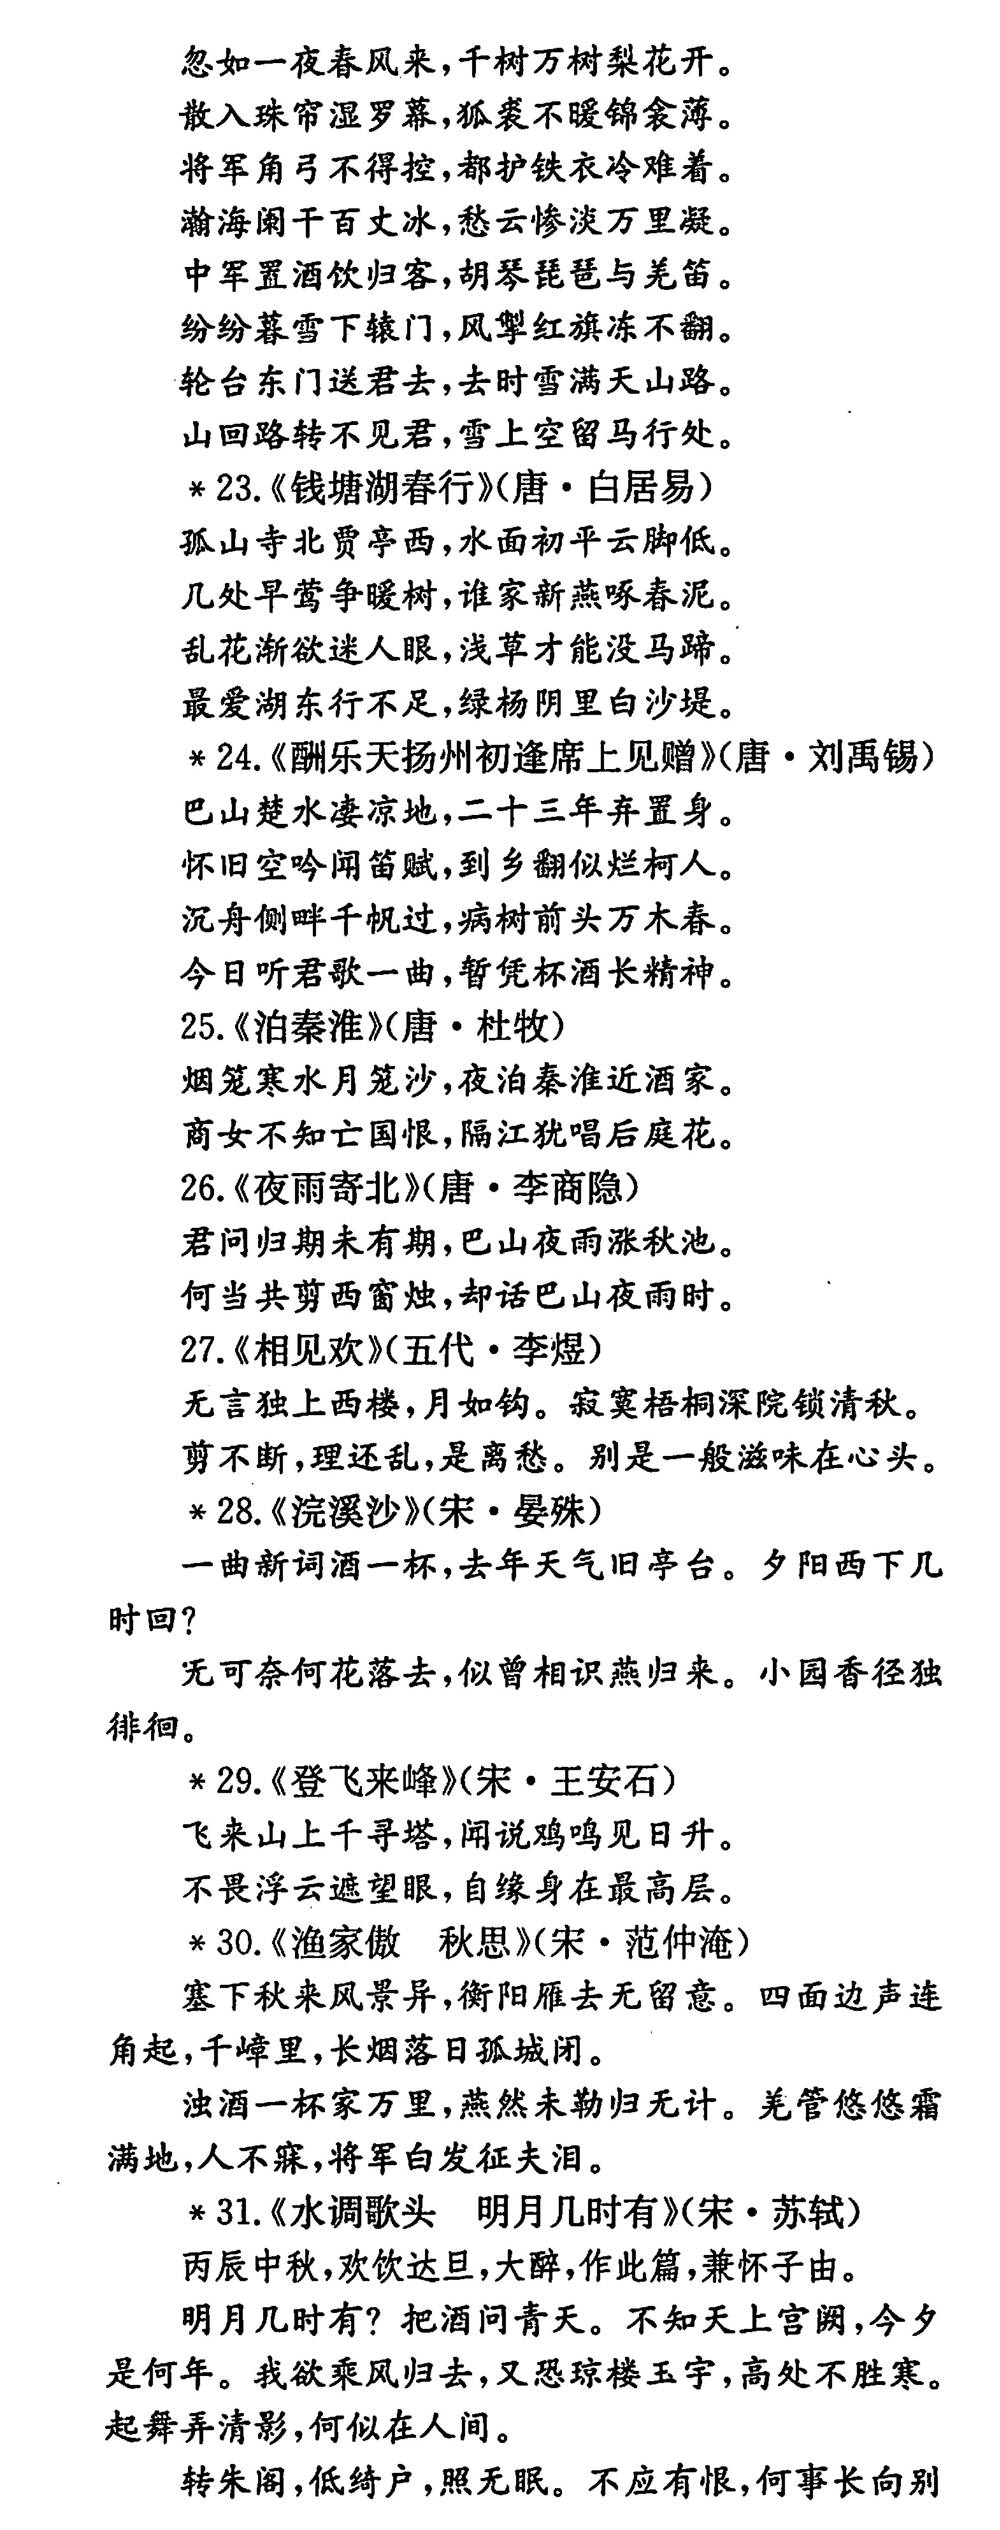 北京中考要求背诵的古诗文篇目